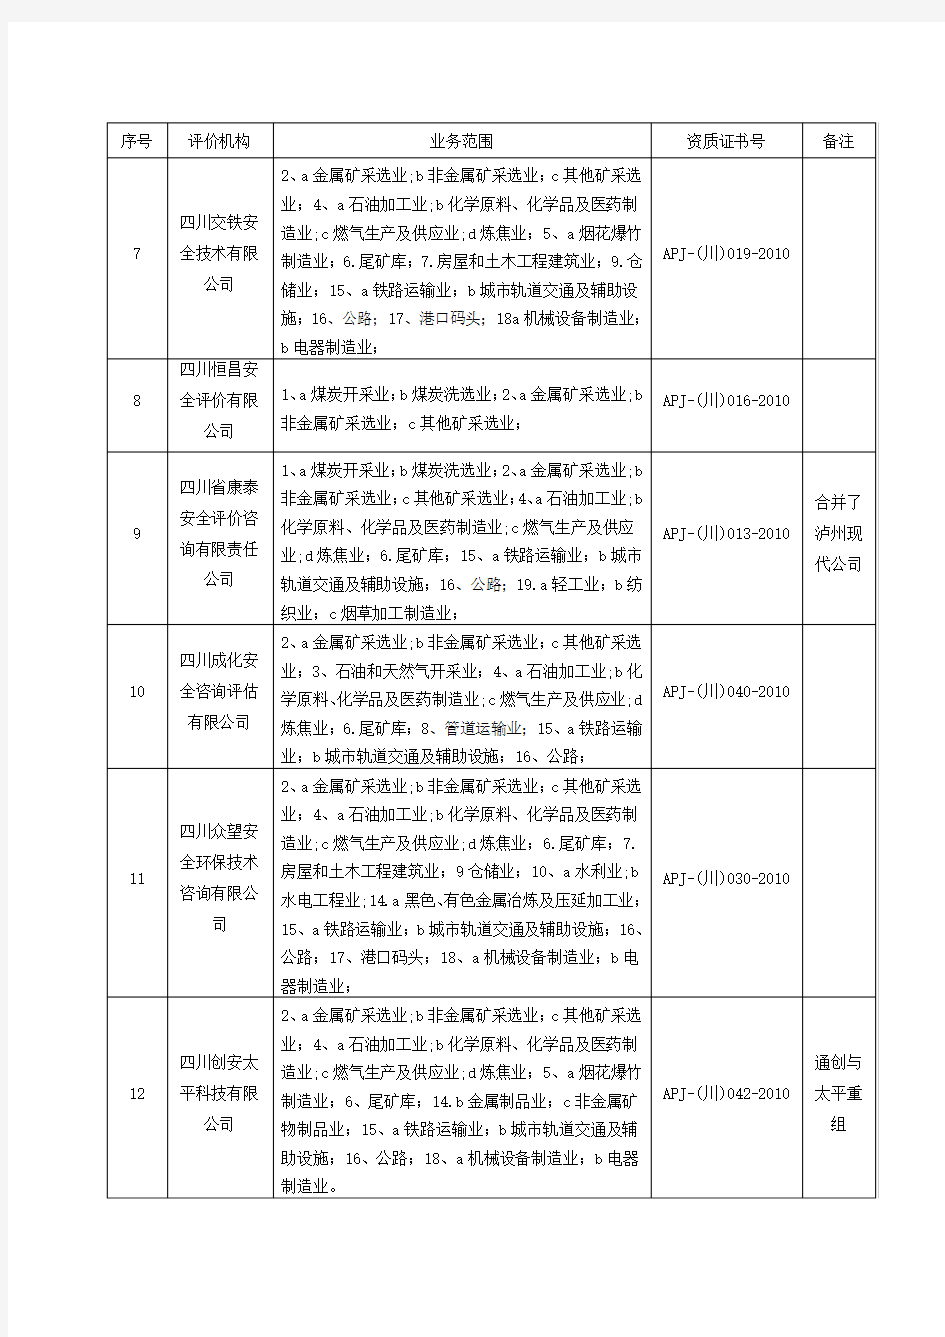 四川准延续的24家安全评价乙级资质机构名单及业务范围